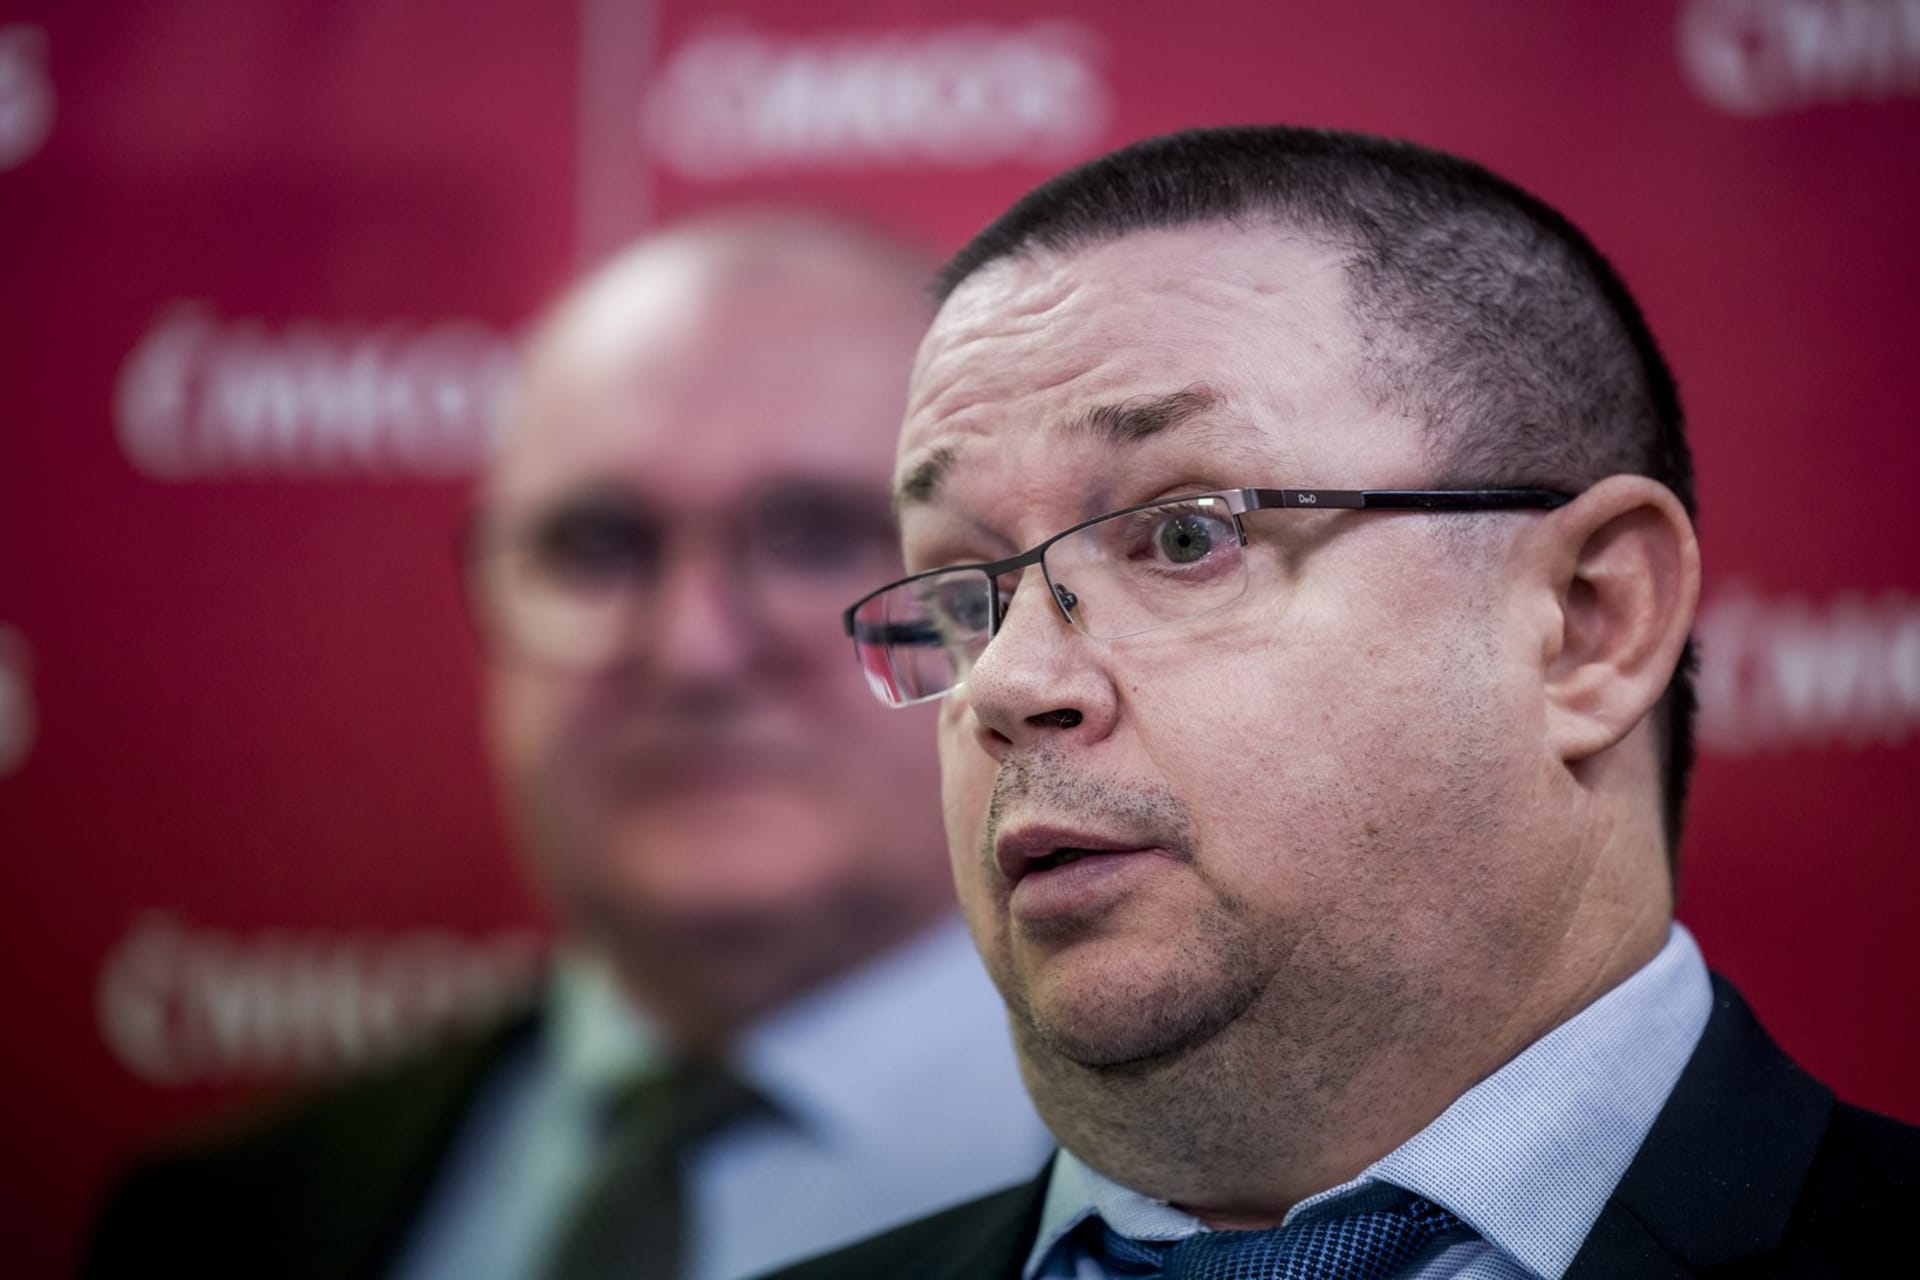 Pozici místopředsedy nově obsadil šéf jejího sociálně-ekonomického oddělení Jiří Vaňásek.